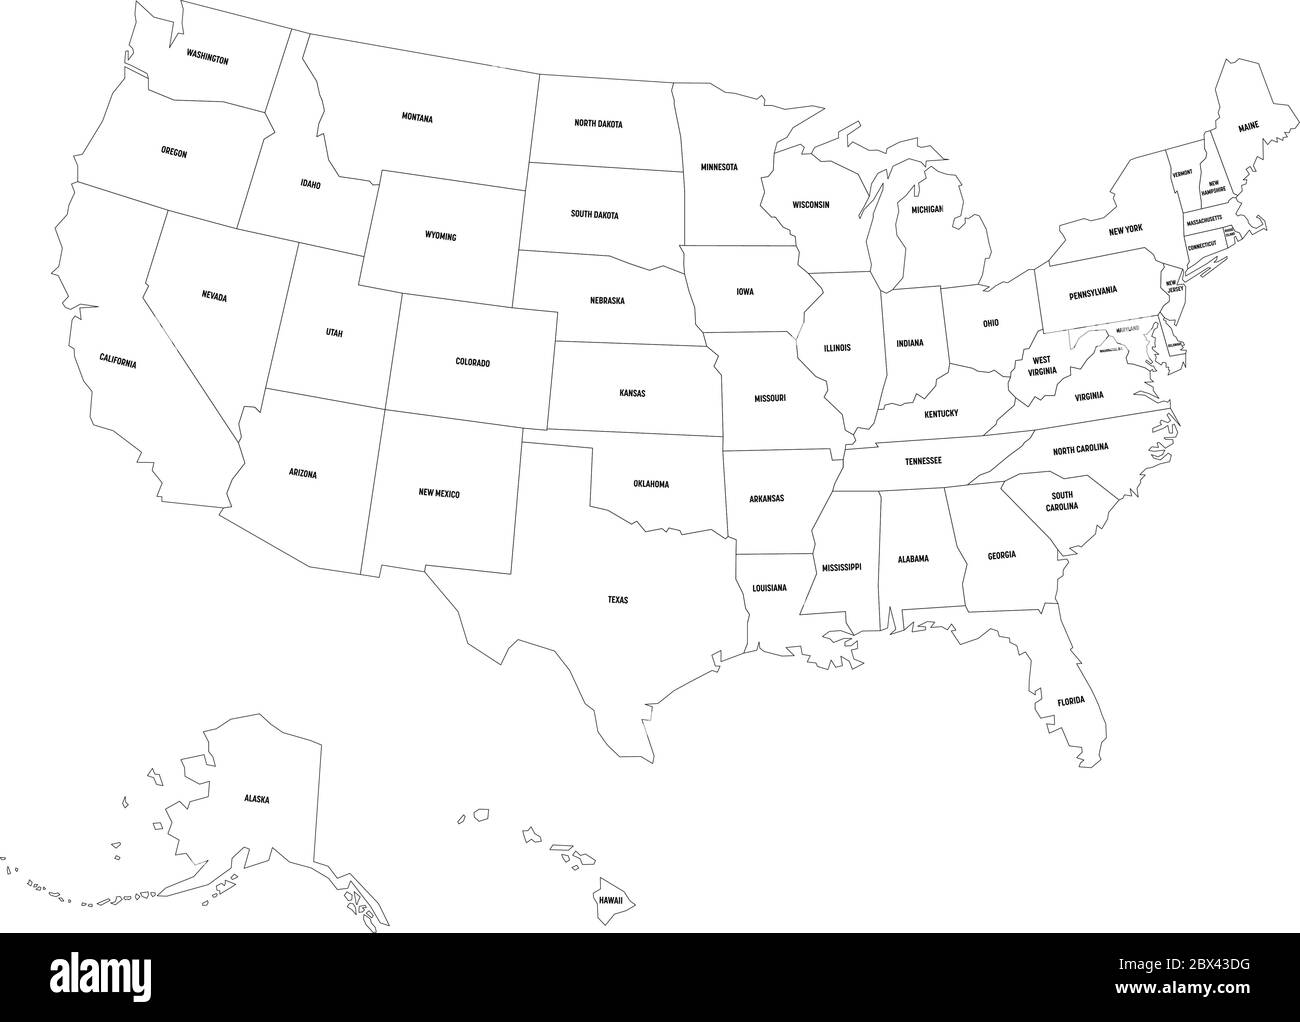 Mappa politica degli Stati Uniti d'America, USA. Semplice mappa vettoriale a contorno nero piatto con etichette nere su sfondo bianco. Illustrazione Vettoriale